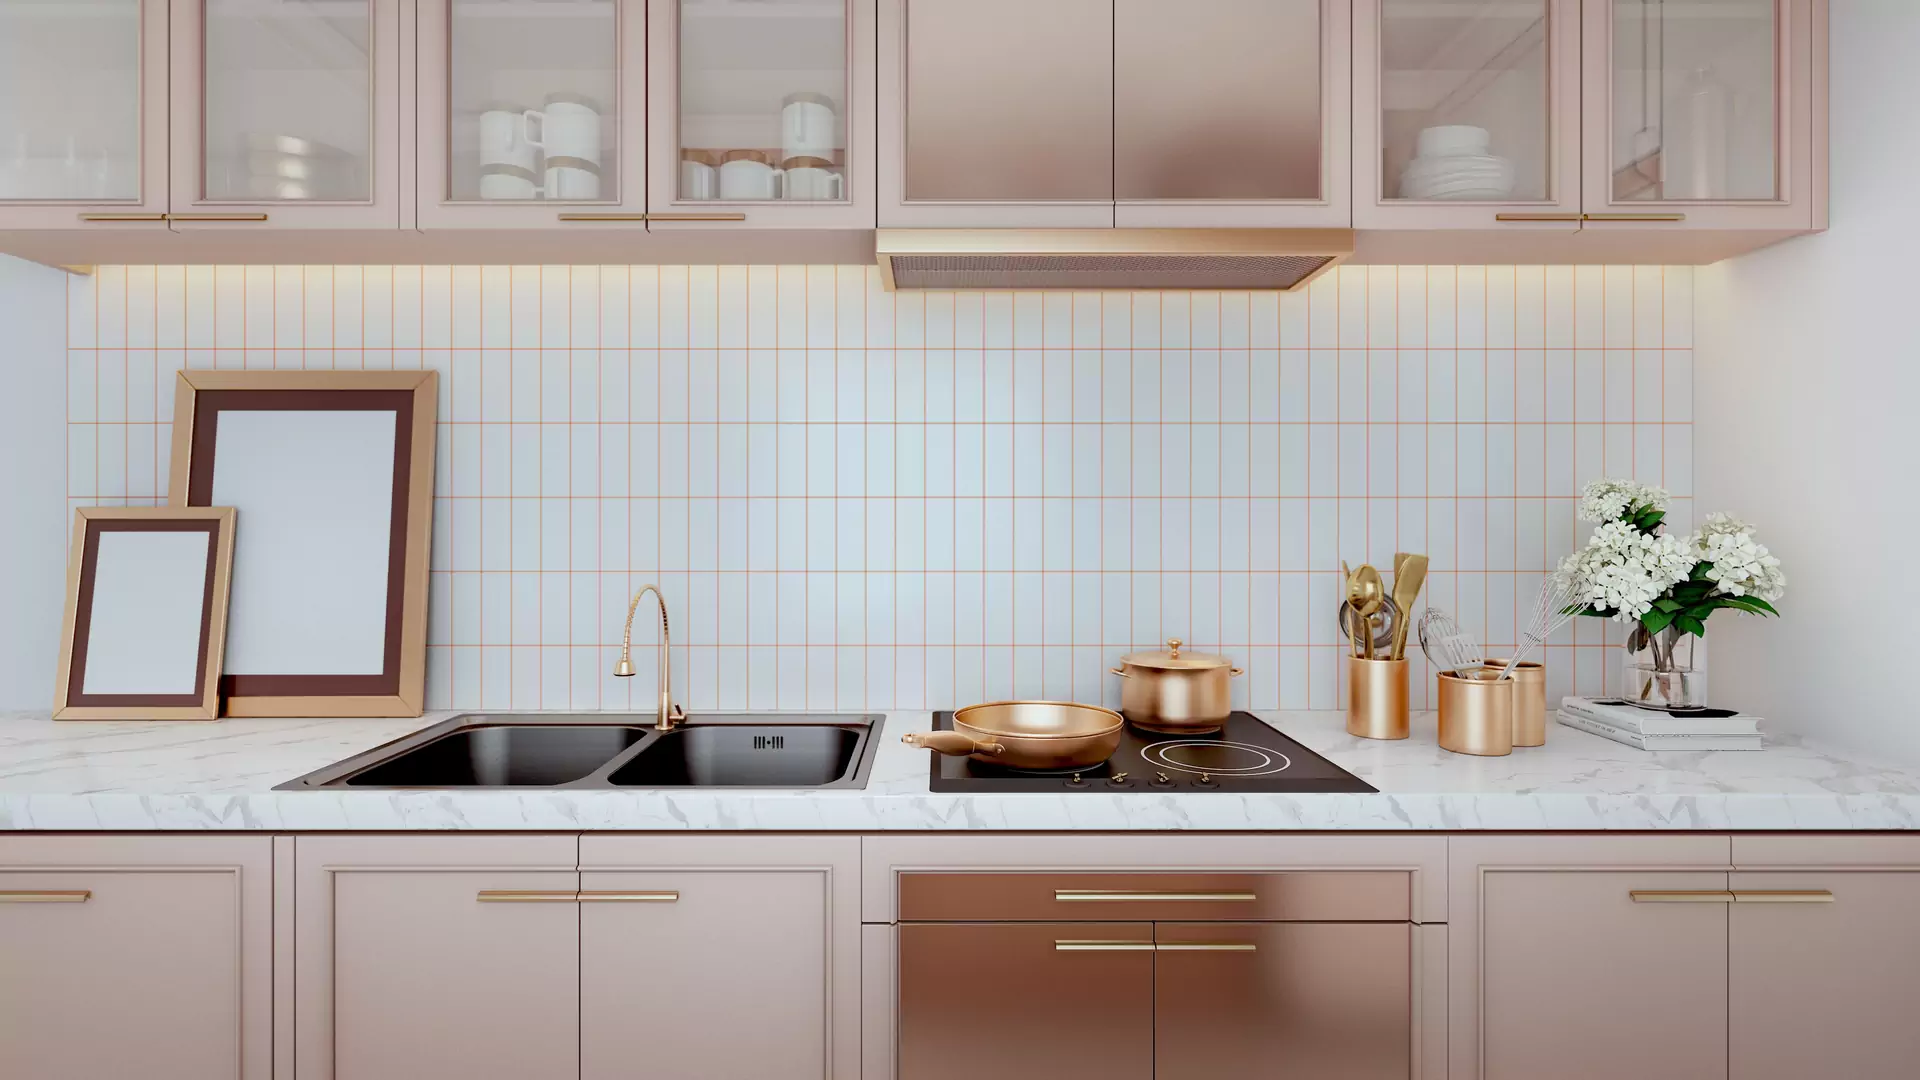 Złoto – królewski kolor w twojej kuchni. Jak zrobić to z wyczuciem?